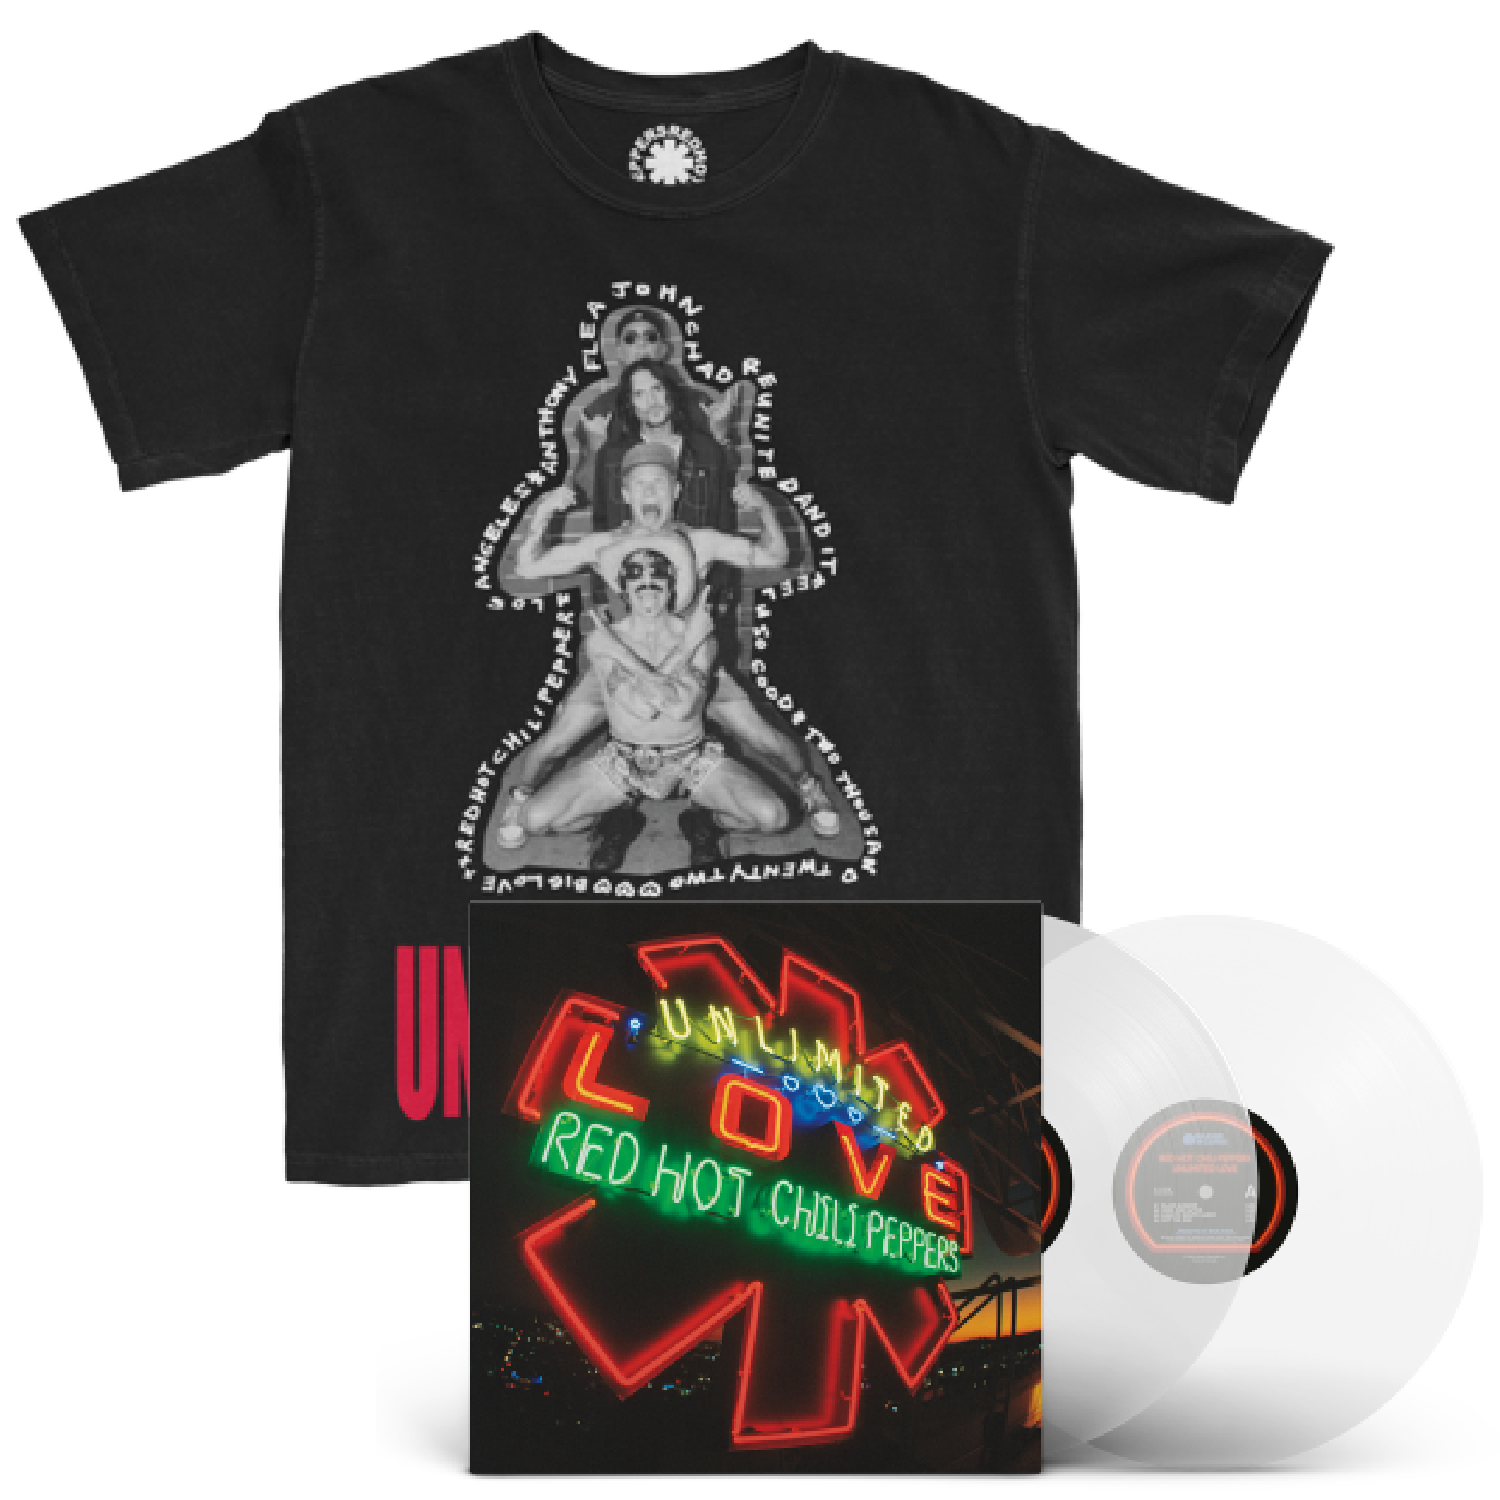 【ストア限定盤】Unlimited Love Store Exclusive Clear Vinyl + T-Shirt セット